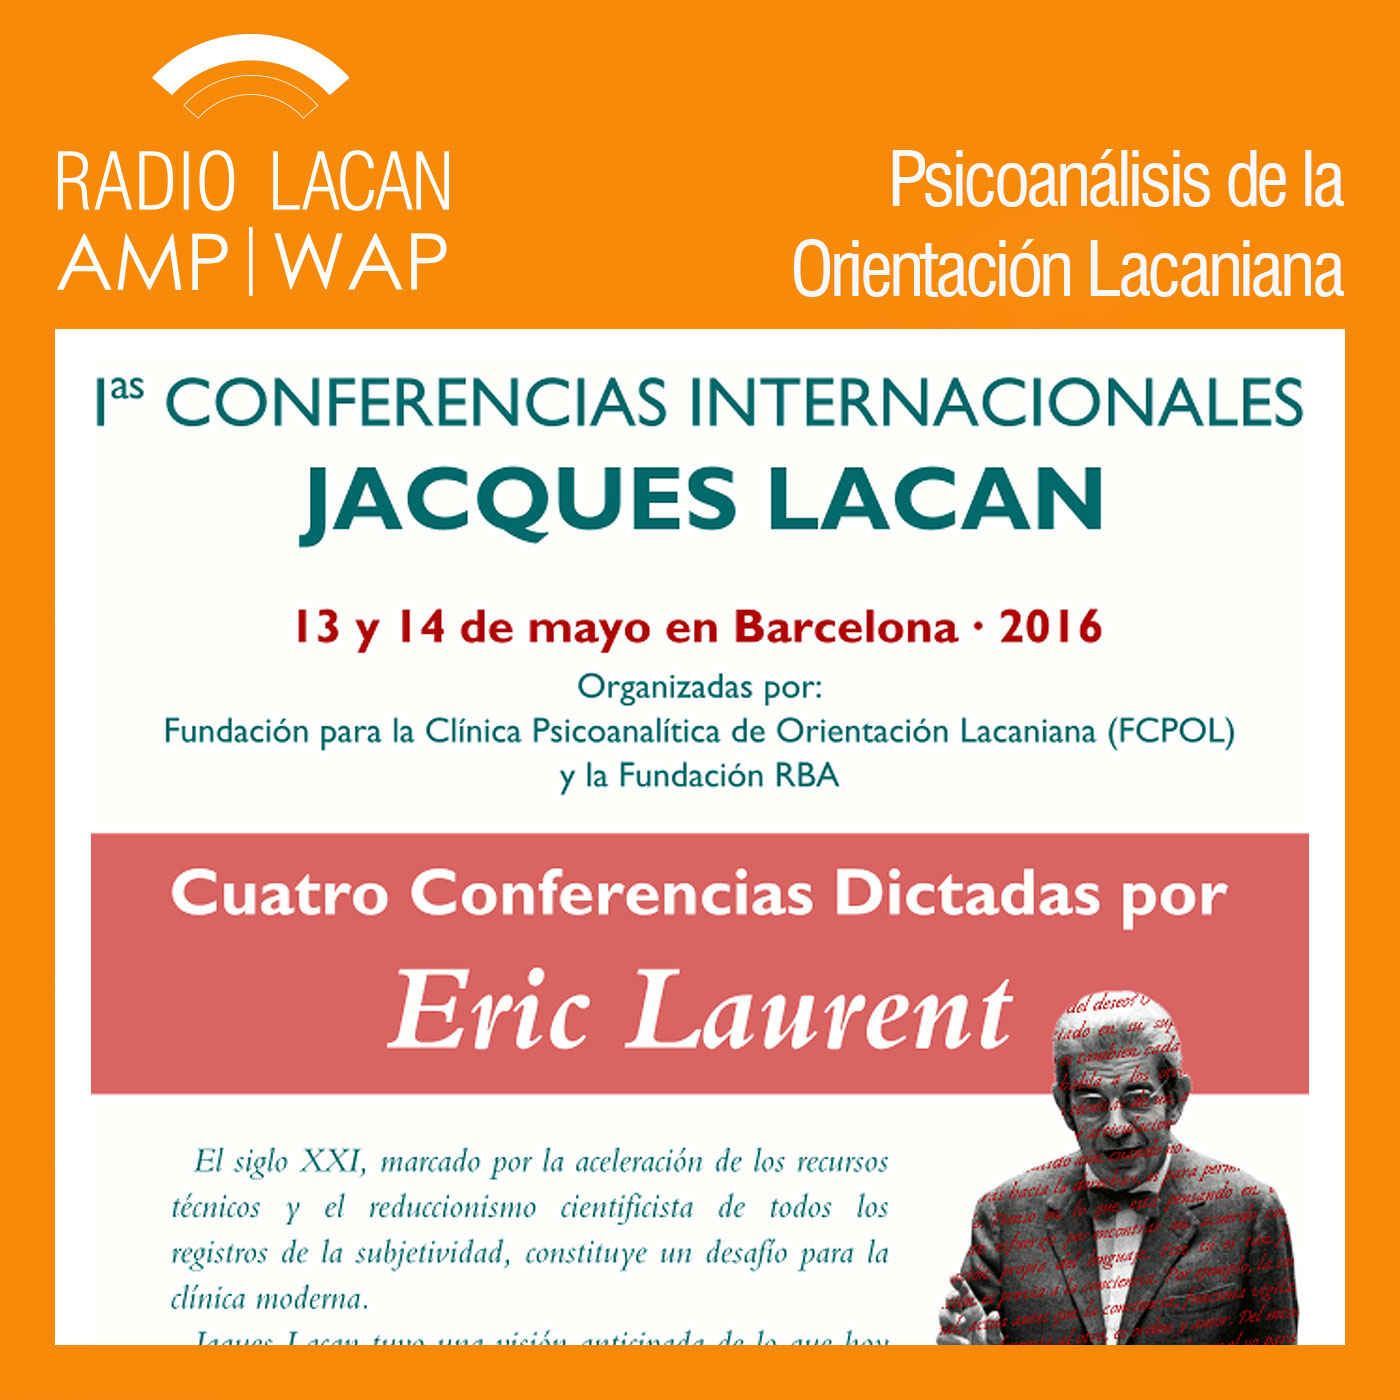 RadioLacan.com | Ecos de Barcelona: Entrevista a Rosa López sobre las Primeras Conferencias Internacionales Jacques Lacan, a